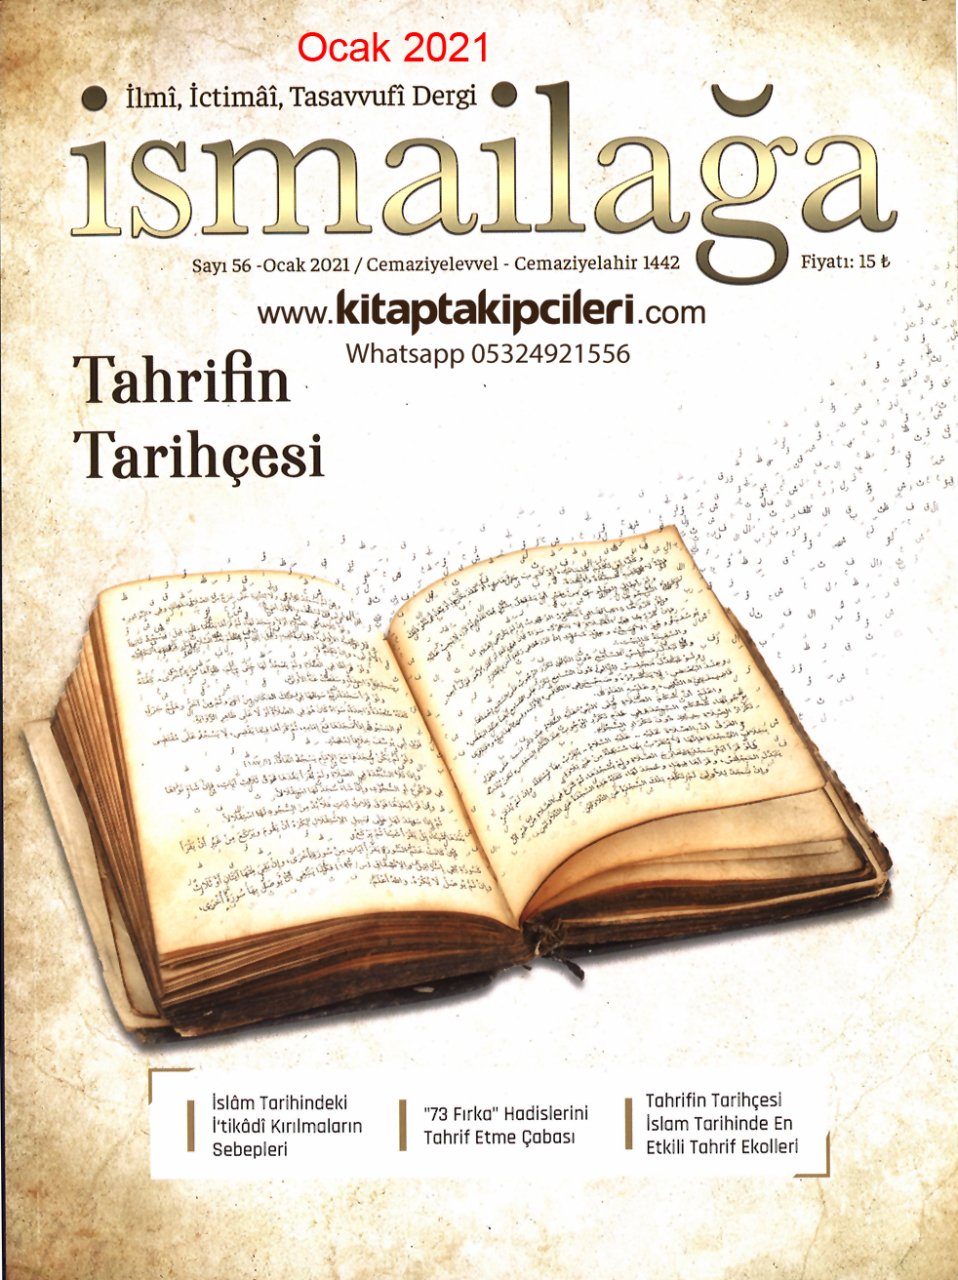 İsmailağa Dergisi Ocak 2021 | Tahrifin Tarihçesi 73 Fırka Hadislerini Tahrif Etme Çabası